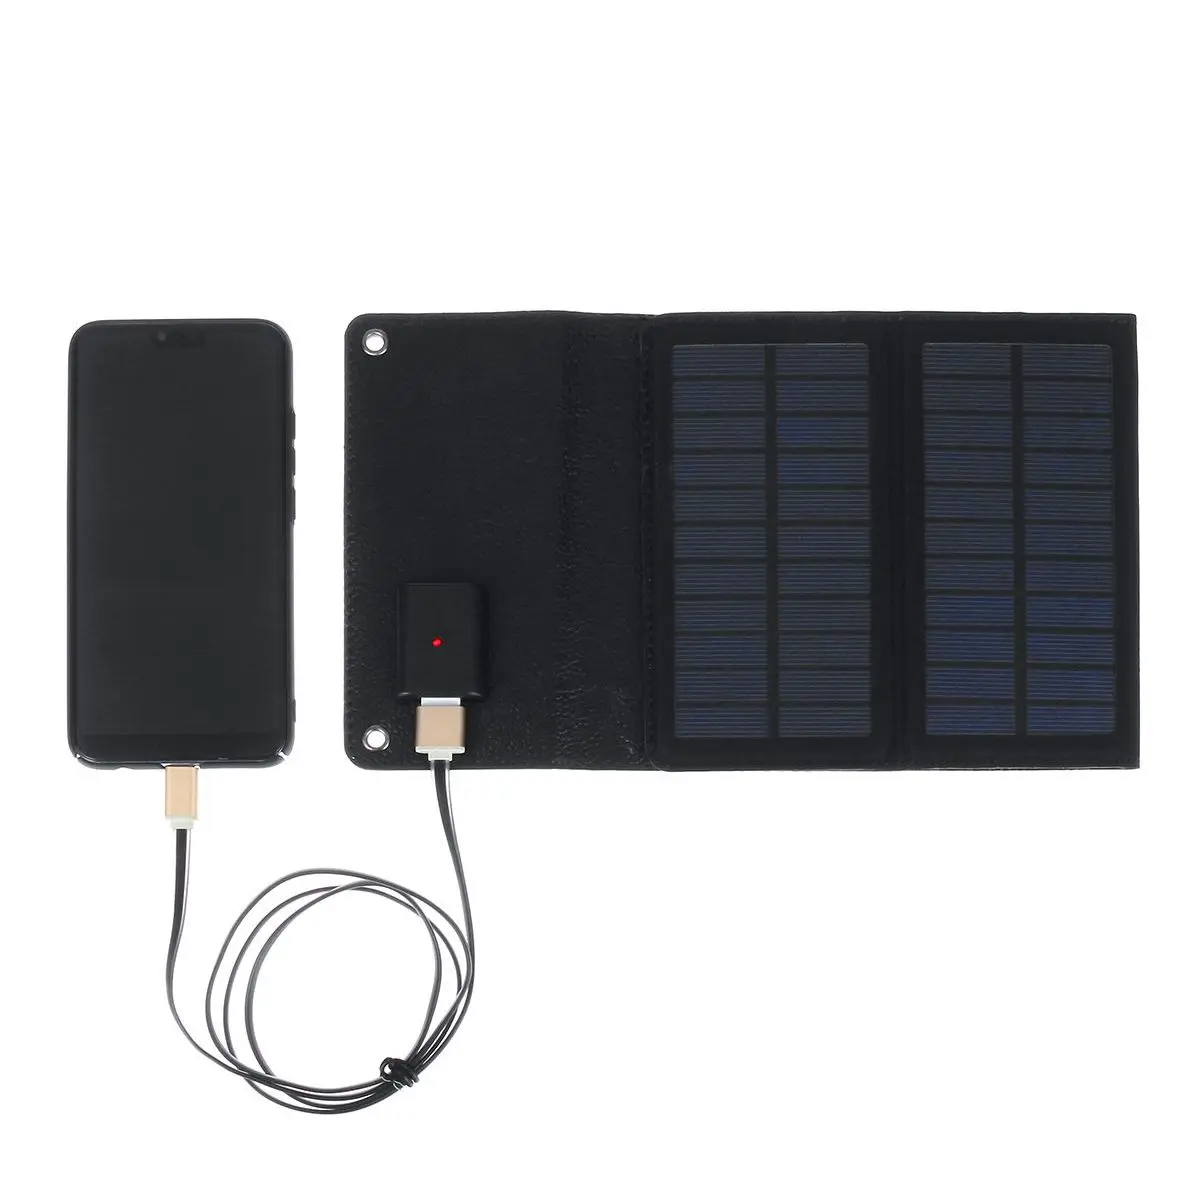 50 Вт Панели солнечные 5V usb-камера с флеш-картой памяти автомобиль Зарядное устройство+ 10/20 Вт, 30 Вт, 50A USB солнечных батарей Зарядное устройство для автомобиля на колесах Батарея кемпинг мобильный Мощность банка